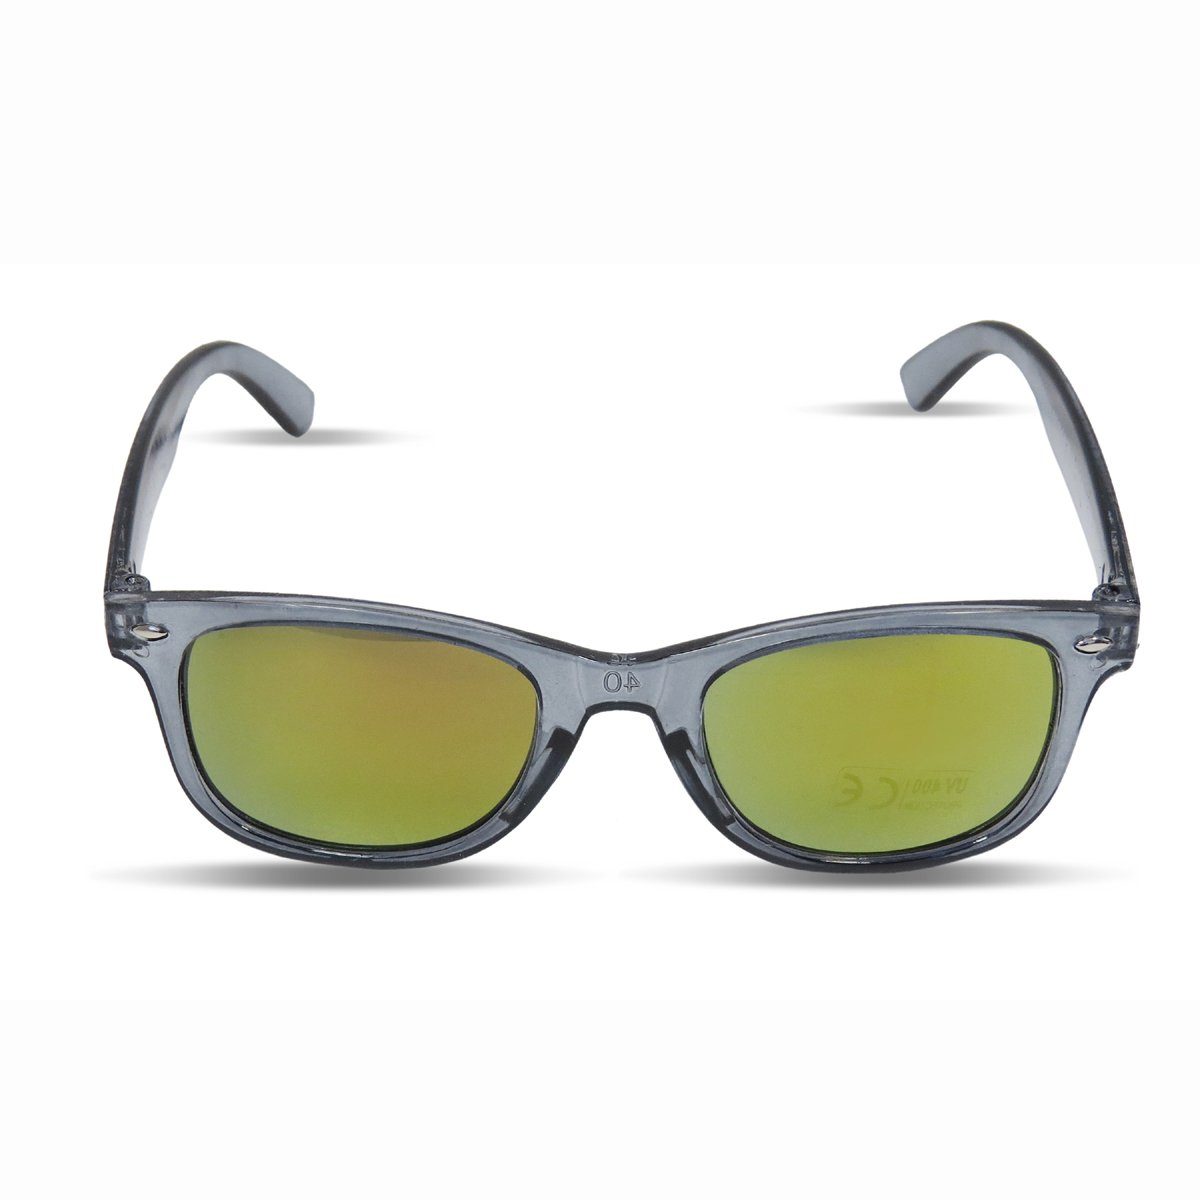 Sonia Originelli Sonnenbrille Kinder Sonnenbrille "Kids Style" Verspiegelt Brille Transparent Onesize grau